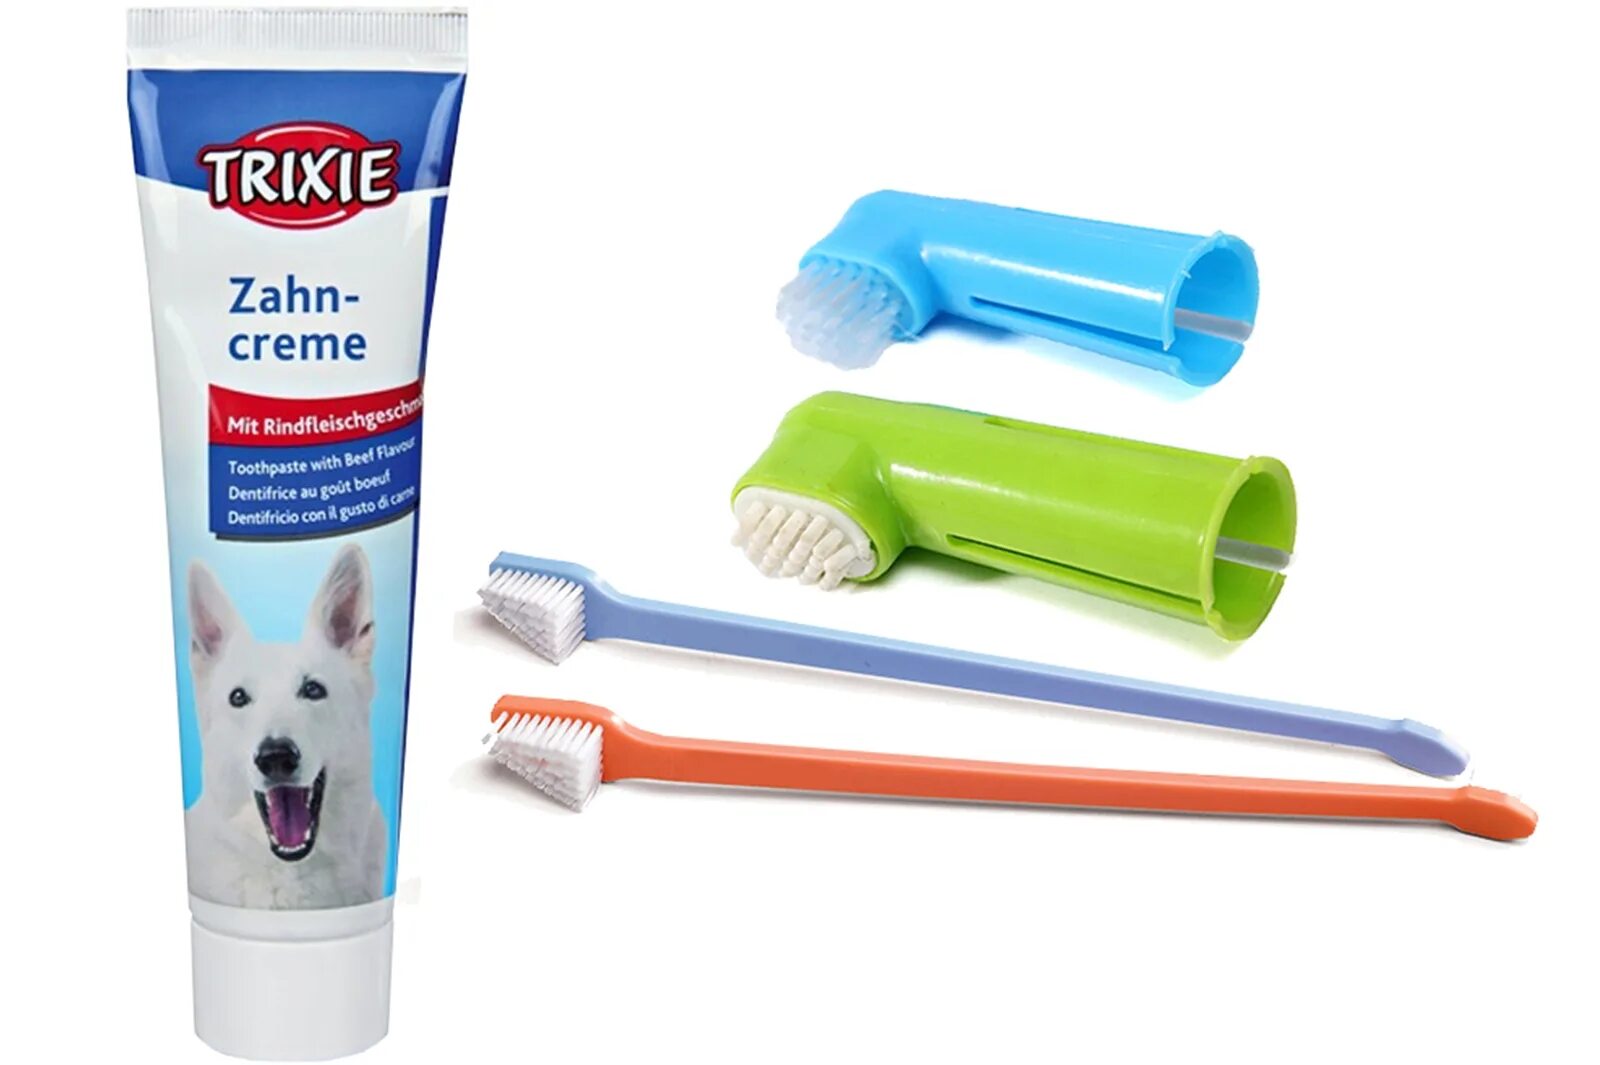 Зубная паста трикси для собак. Harzt Brush n clean Dental зубная паста для собак. Зубная щётка для собак мелких пород. Щетка для чистки зубов собак. Косточка для чистки зубов